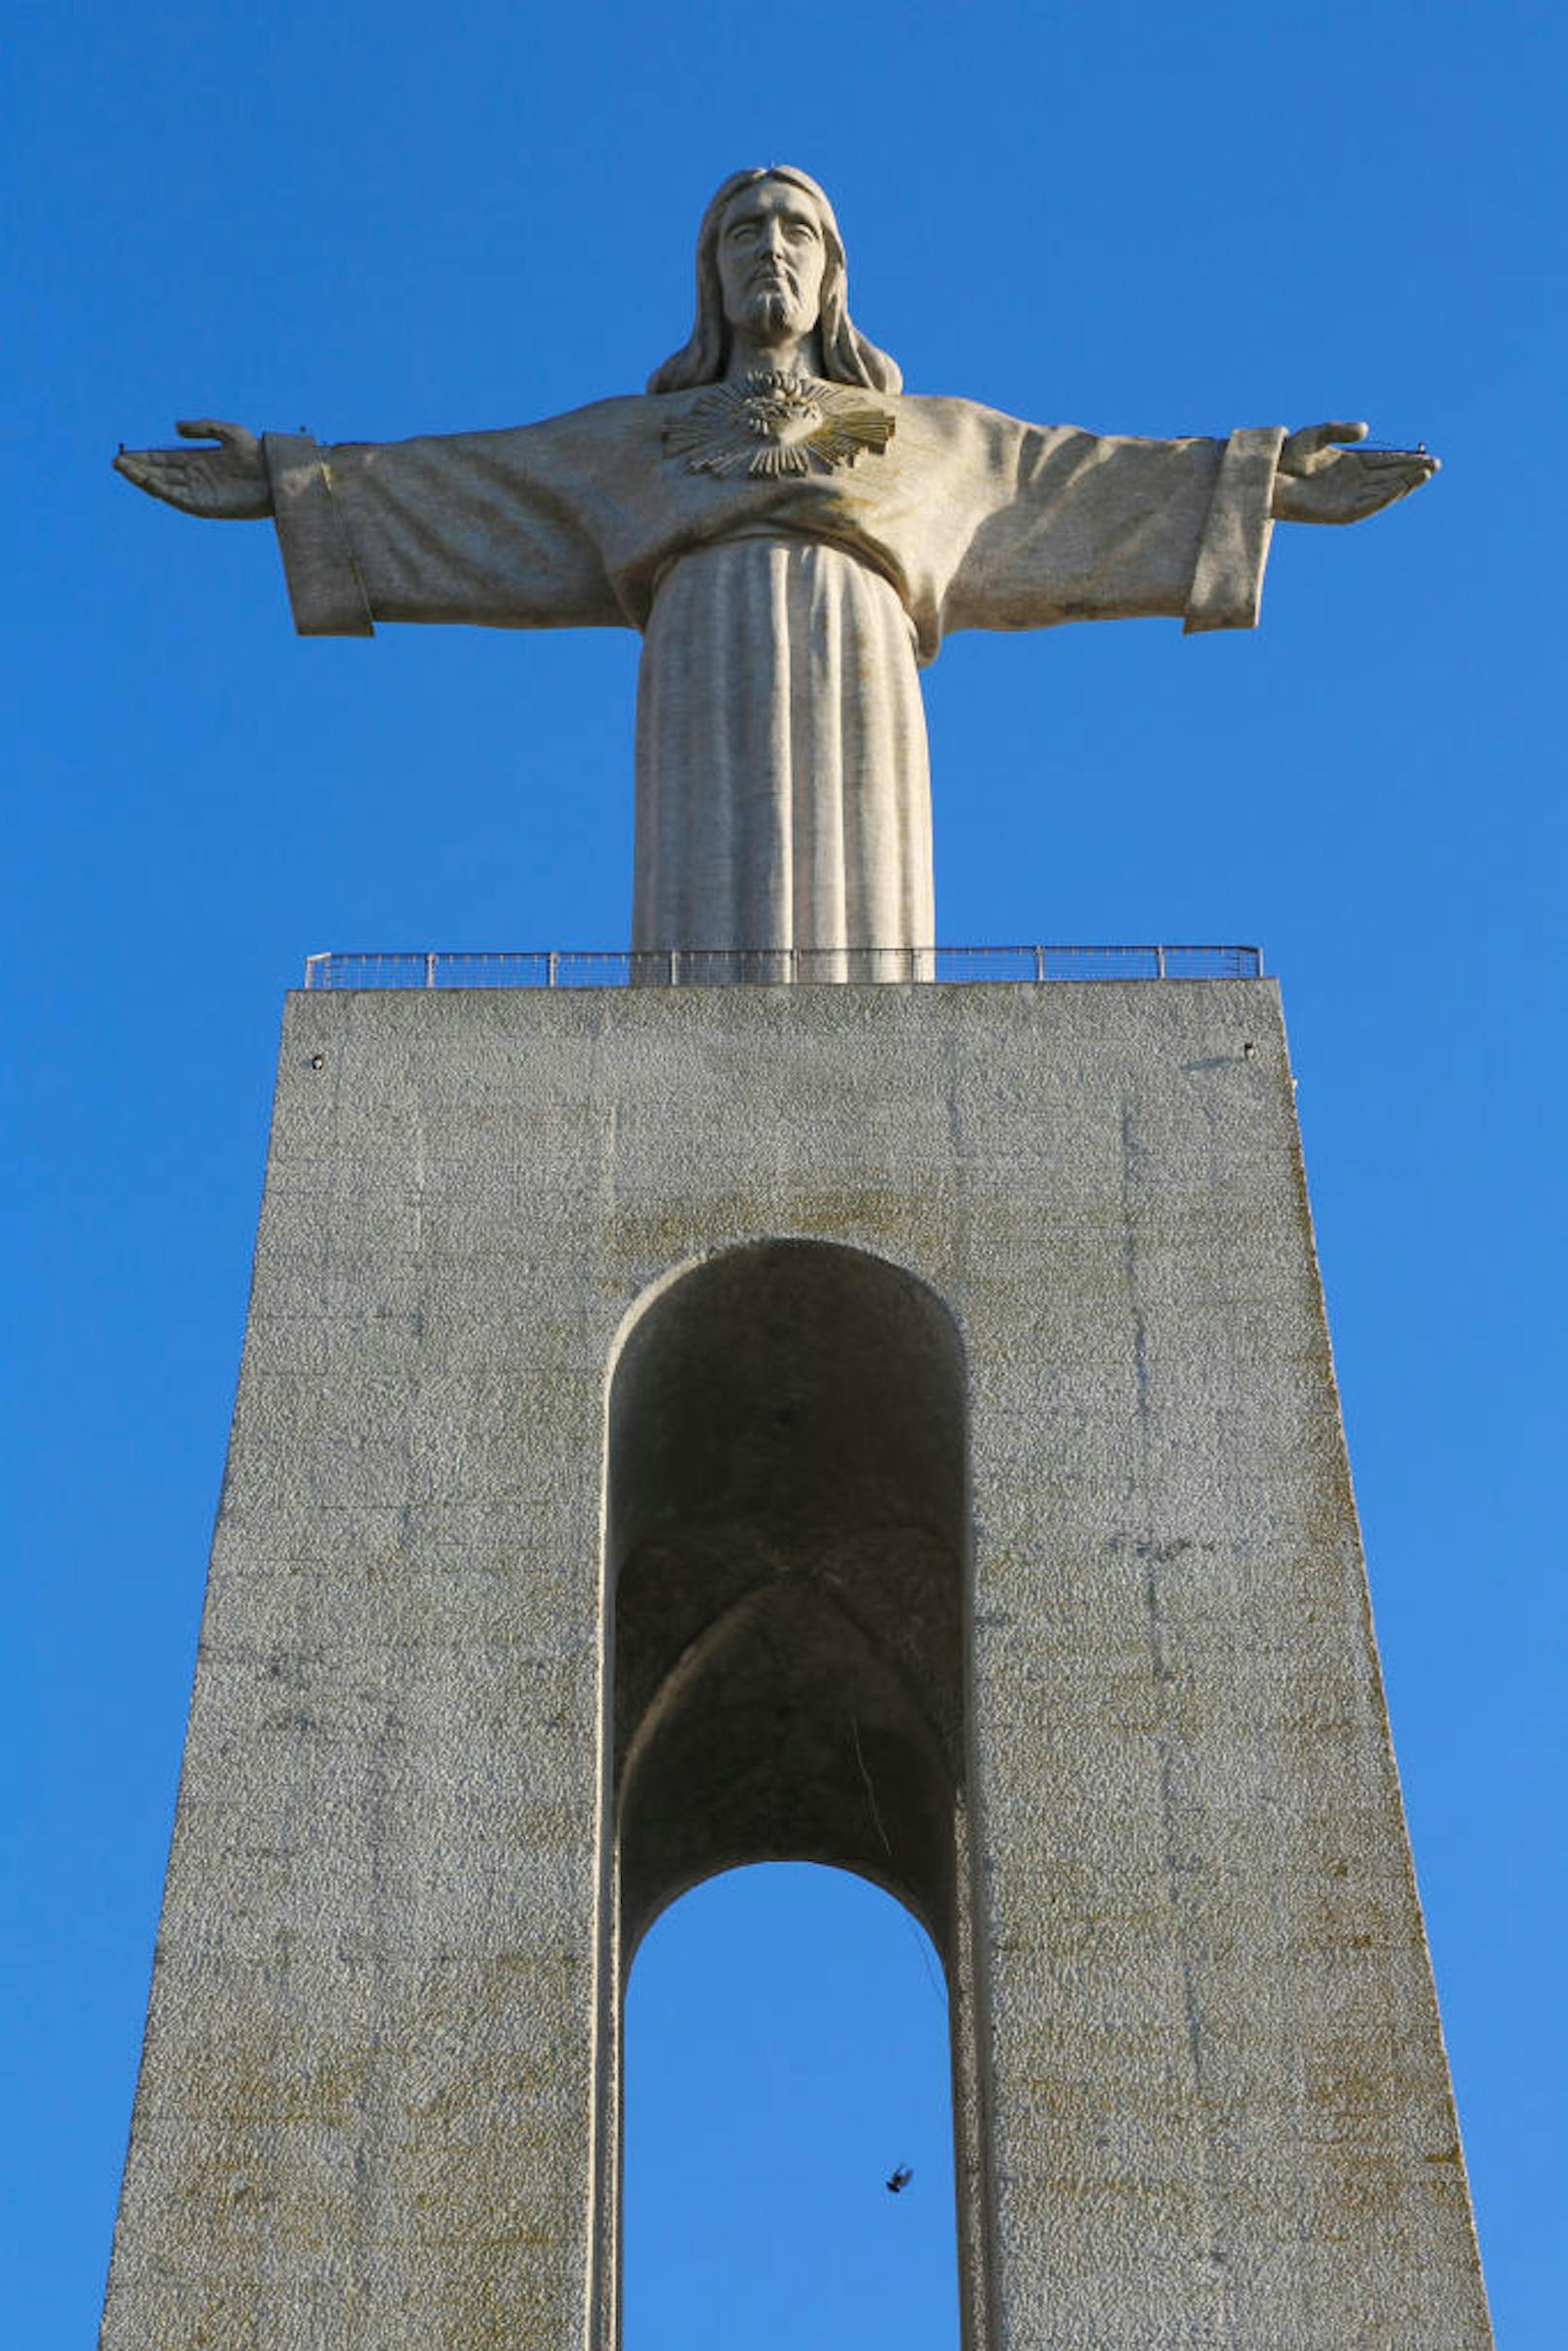 <b>Die portugiesische Christus Statue: </b>
Wer in Almada in der Nähe von Lissabon eine Christus Statue entdeckt, hat sich keineswegs verlaufen. Ein Erzbischof von Lissabon holte sich 1934 Inspiration beim Original in Rio de Janeiro und nach einer zehnjährigen Bauzeit entstand der 28 Meter hohe Cristo Rei. 